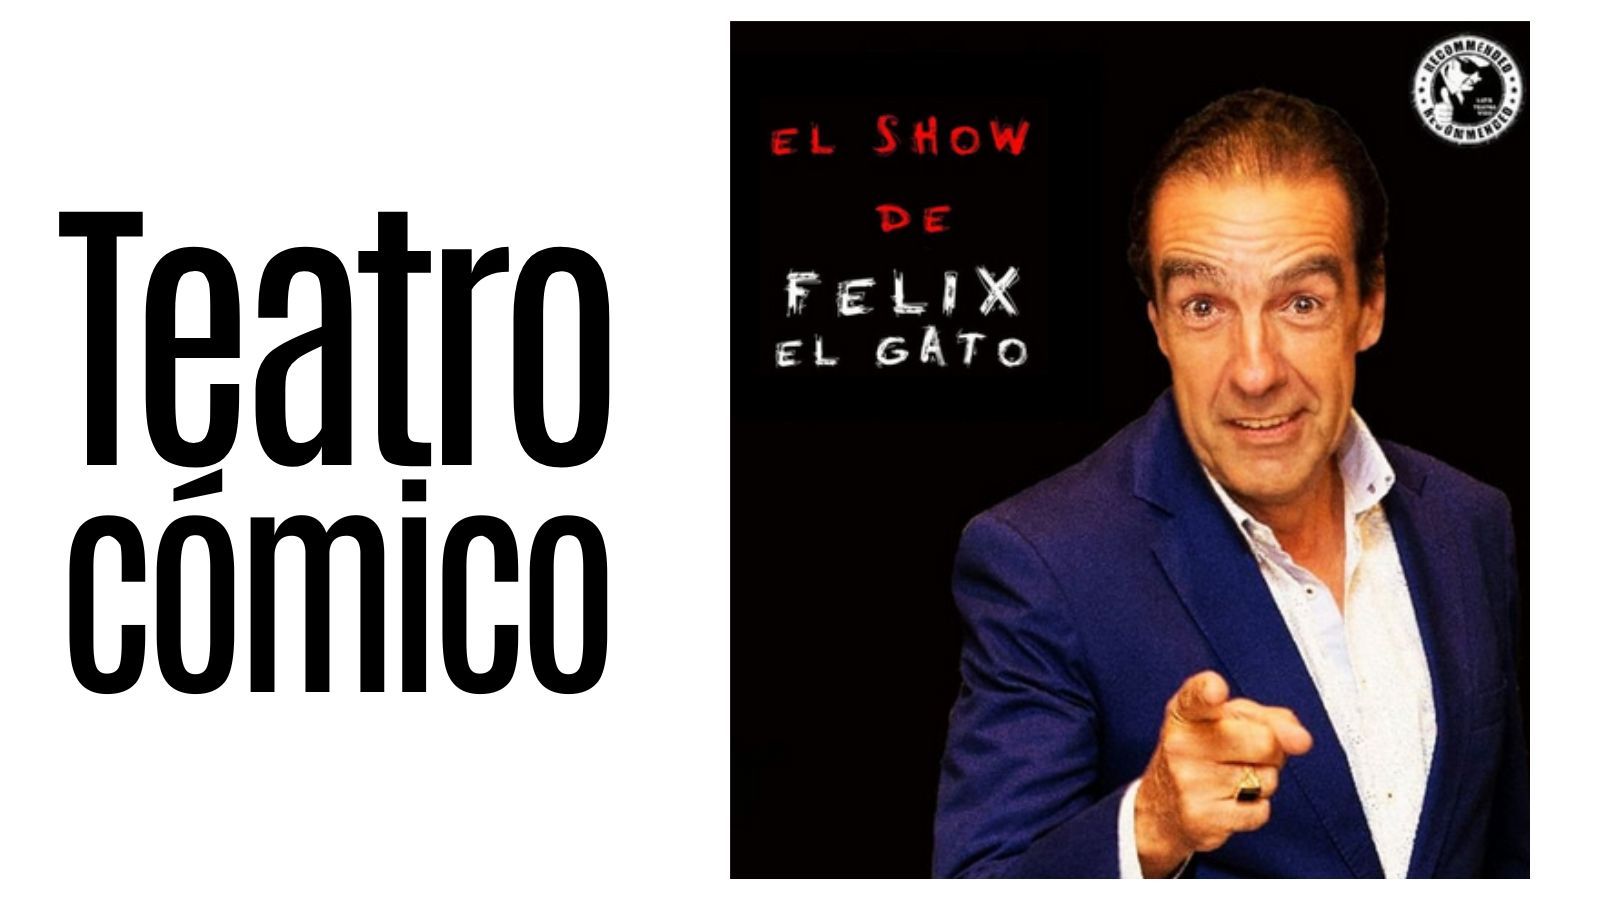 TEATRO CÓMICO. “El Show de Félix el Gato”